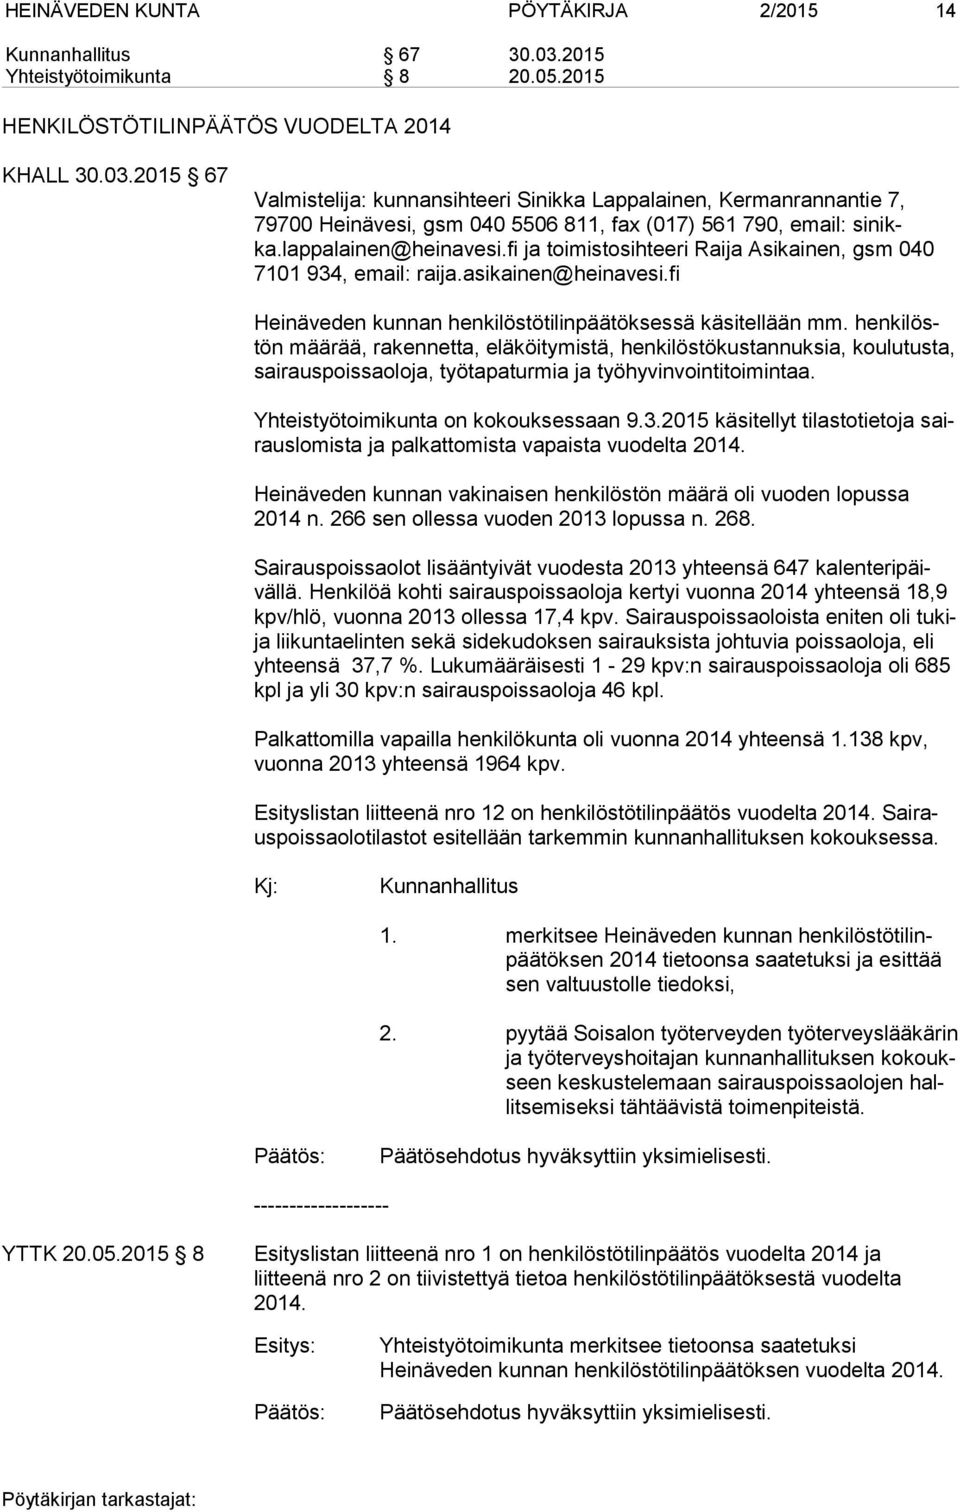 2015 67 Valmistelija: kunnansihteeri Sinikka Lappalainen, Kermanrannantie 7, 79700 Heinävesi, gsm 040 5506 811, fax (017) 561 790, email: si nikka.lappalainen@heinavesi.